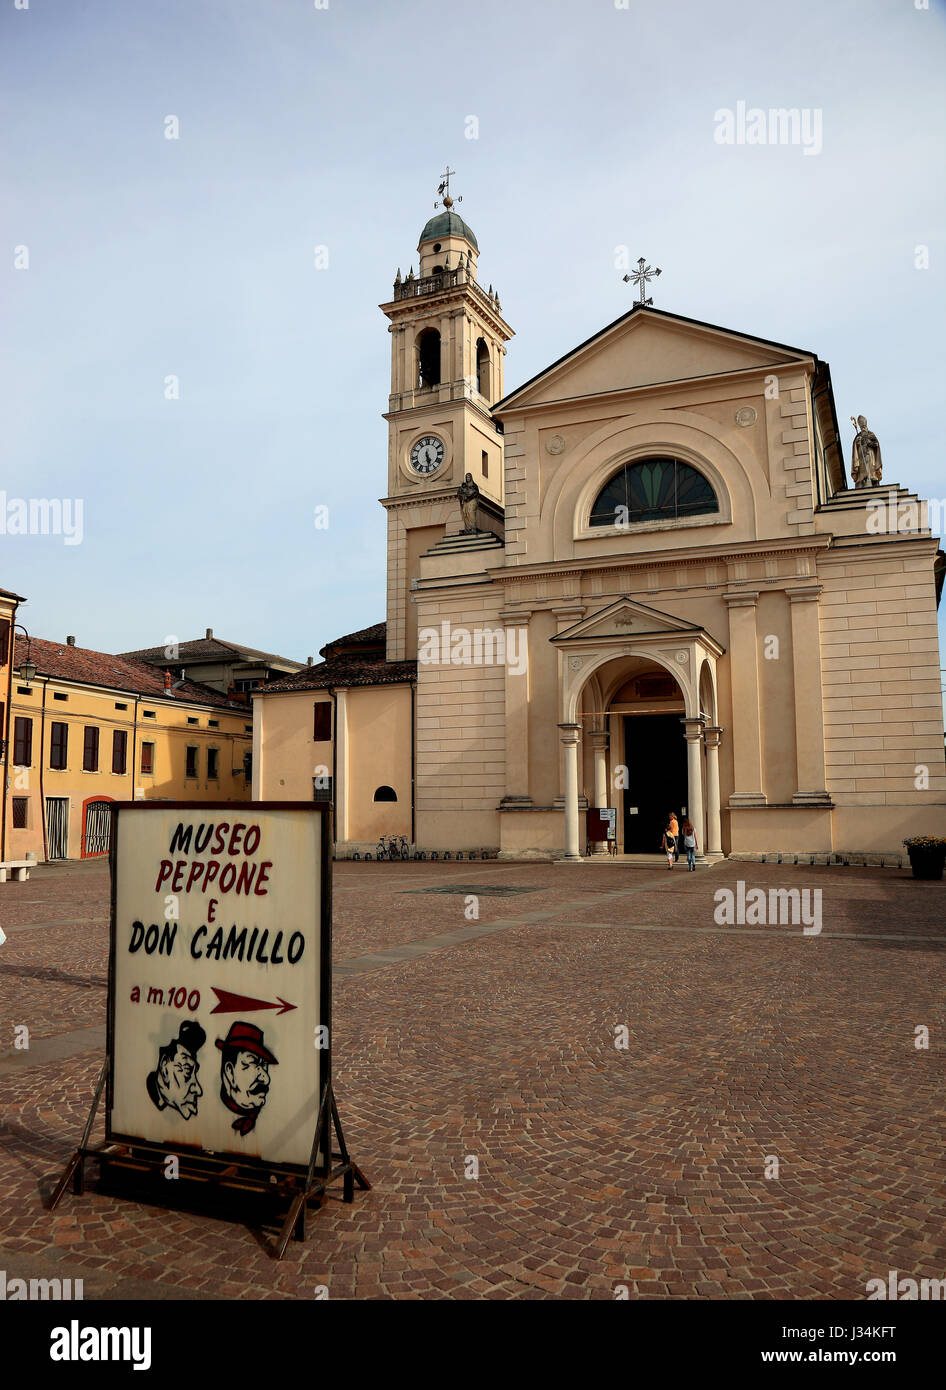 Advertising for the museum of Don Camillo and Peppone, Brescello, Province of Reggio Emilia, Emilia-Romagna, Italy Stock Photo